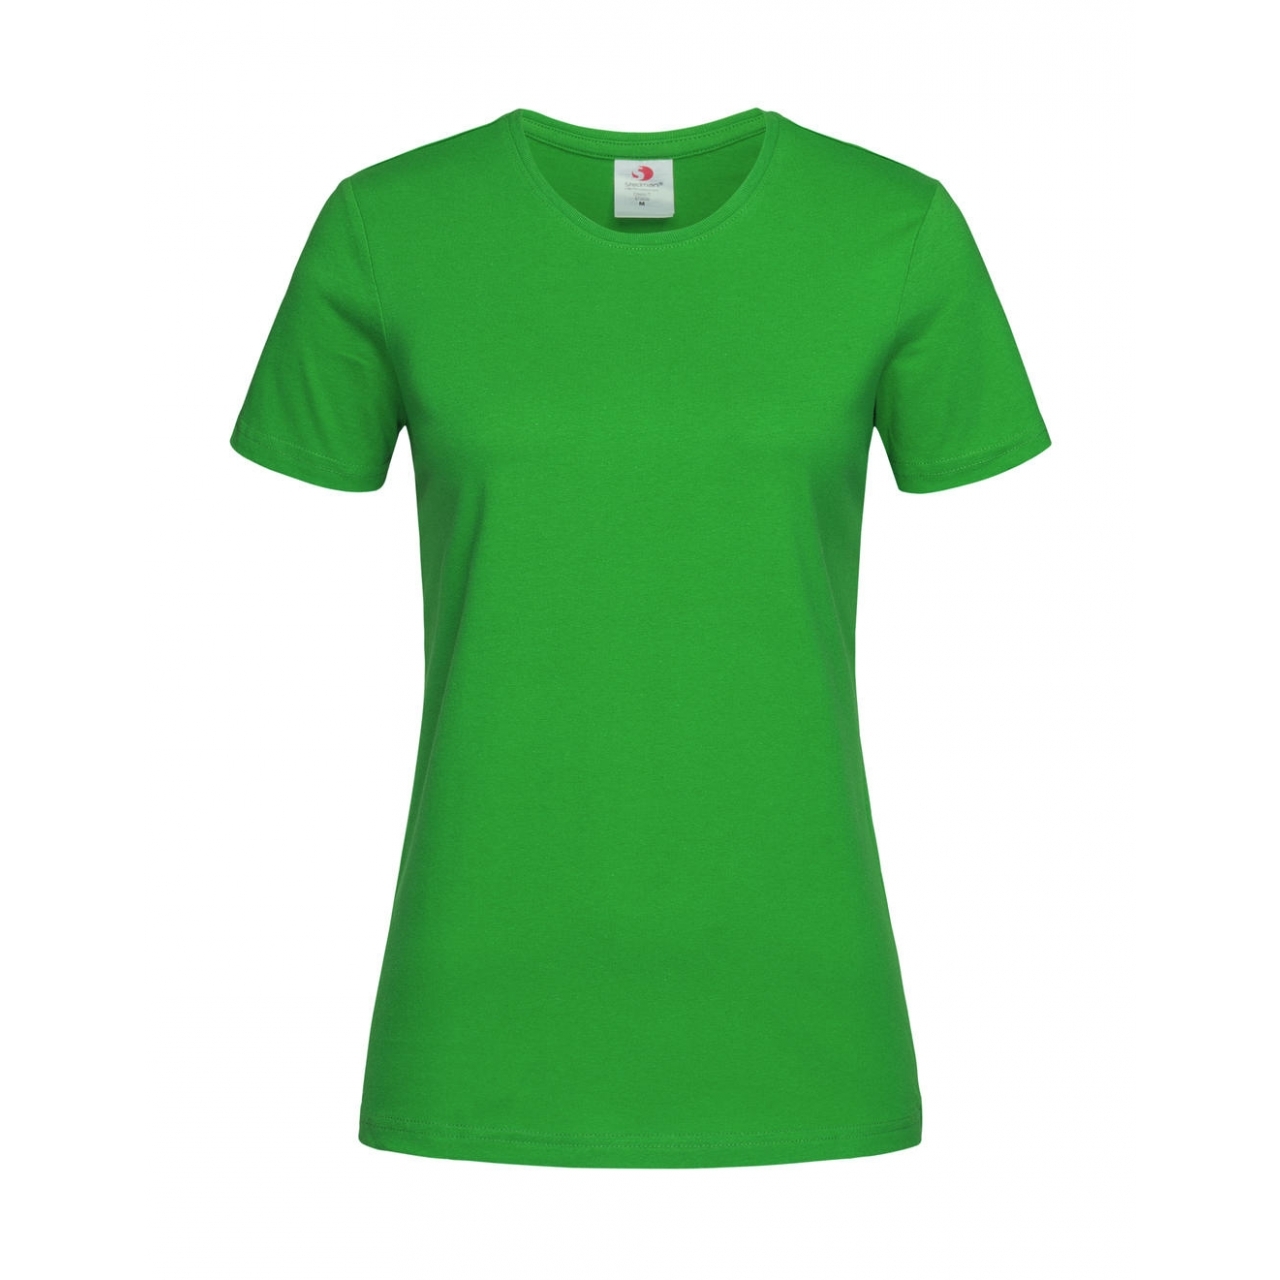 Tričko dámské Stedman Fitted s kulatým výstřihem - zelené, XXL